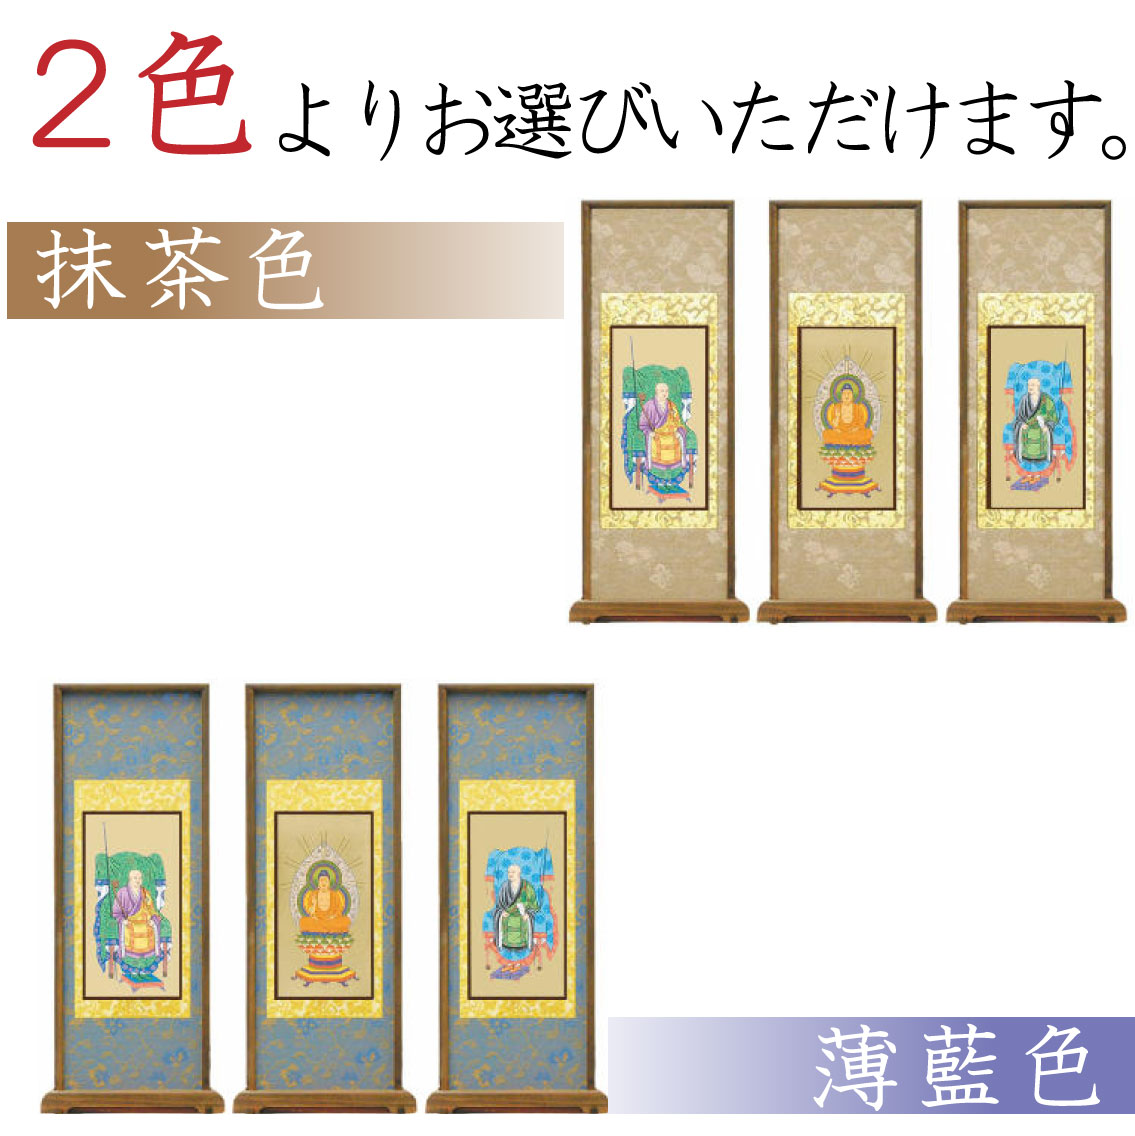 【高級素材」曹洞宗のスタンド式掛け軸は、2色からお選び頂けます。